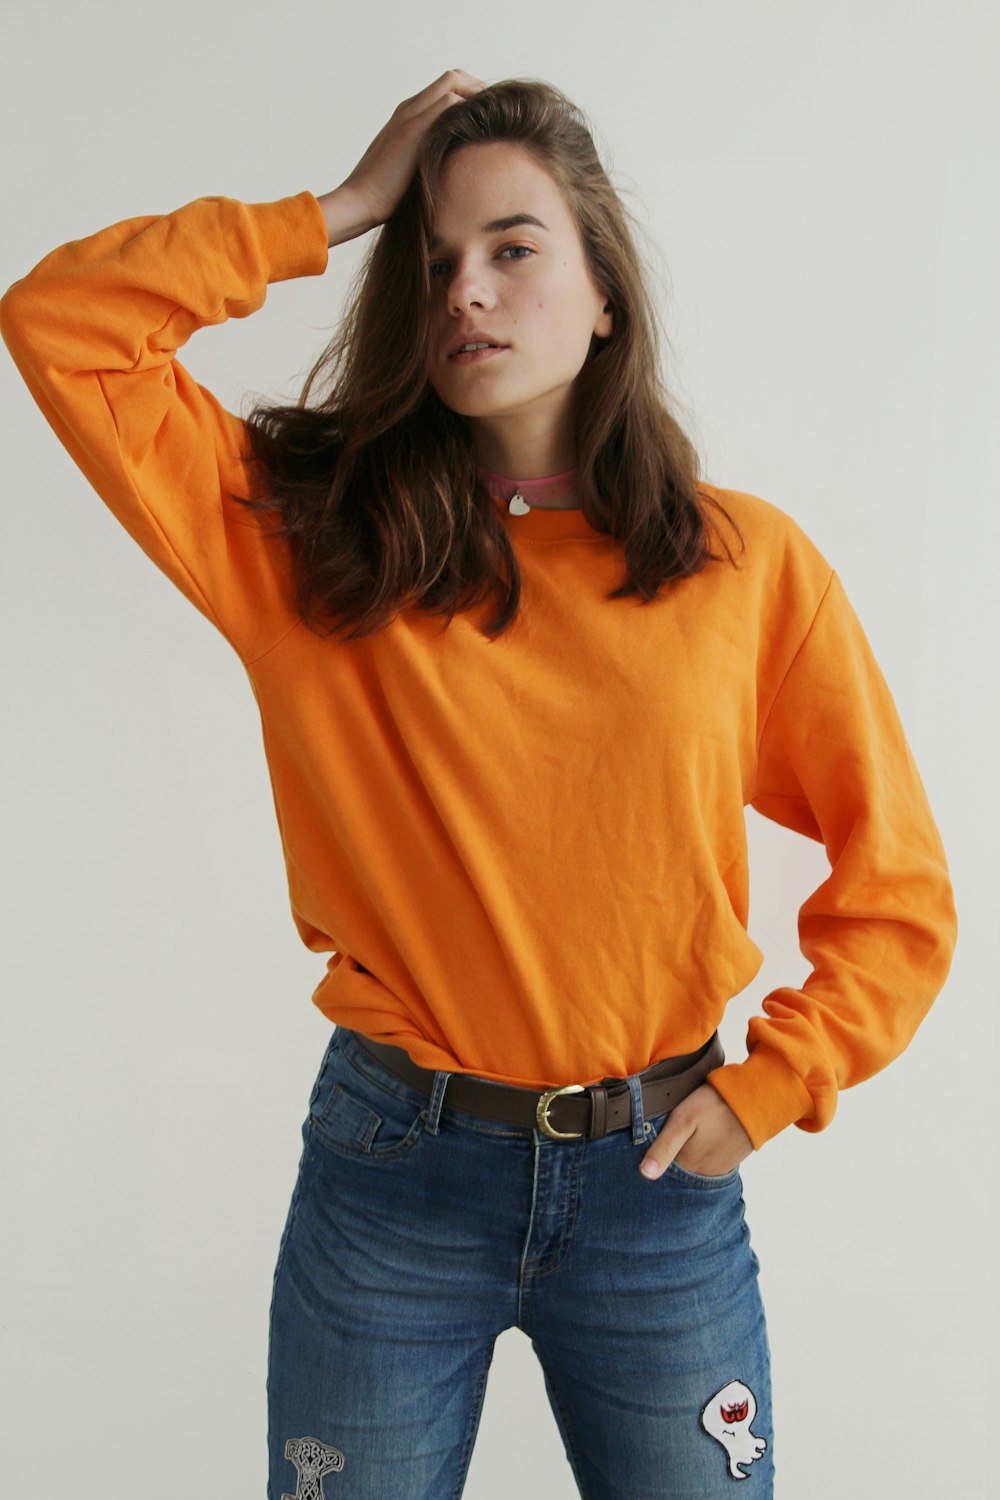 Donna che indossa una felpa girocollo arancione in piedi mentre mette la mano destra sulla testa